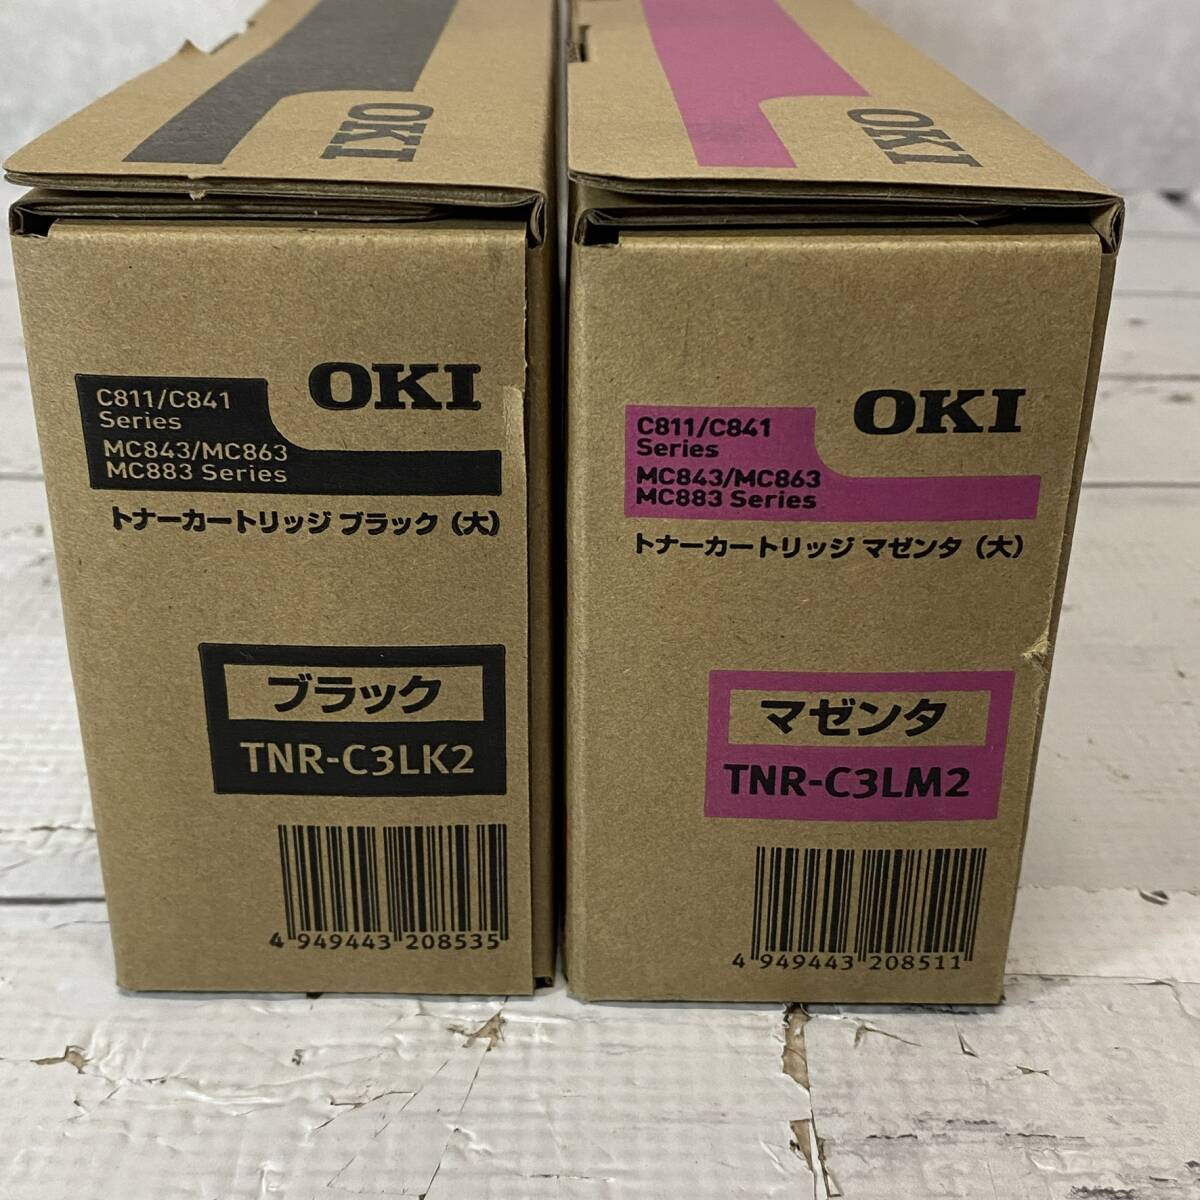 未使用 OKI TNR-C3LK2 TNR-C3LM2 2本セット ブラック トナーカートリッジ C811/C841 Series用 純正品 _画像4